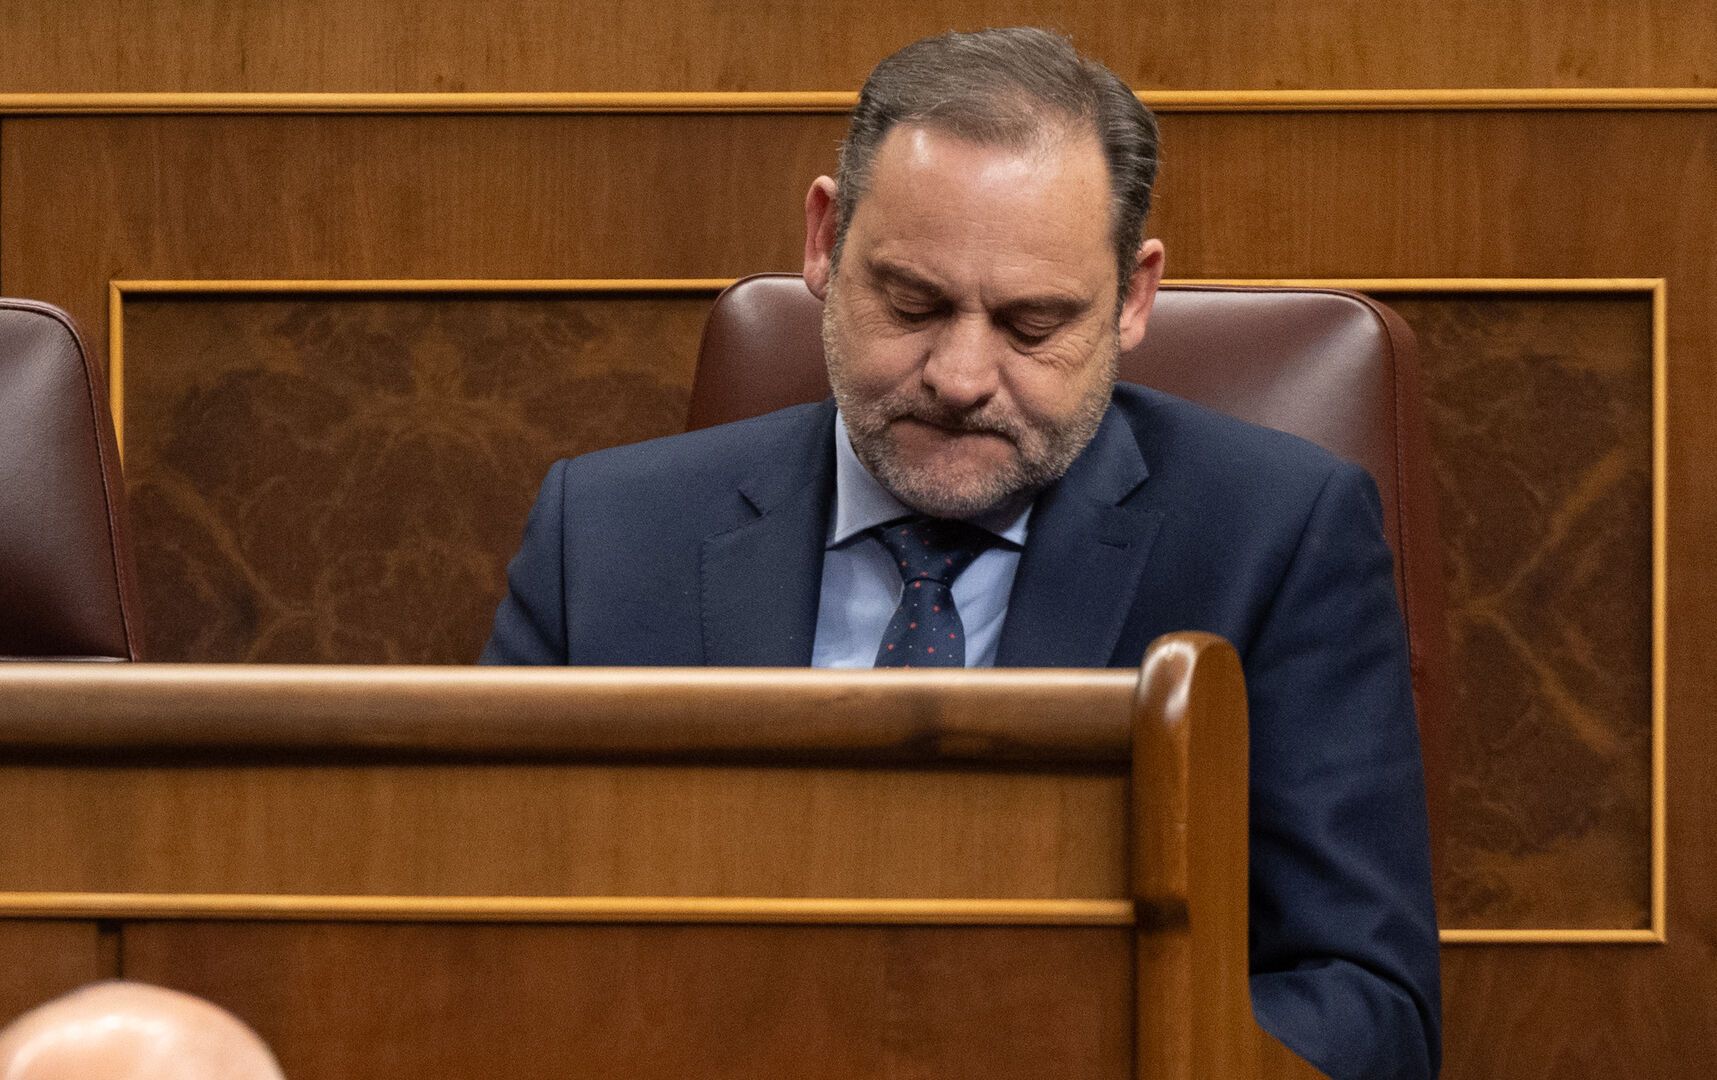 El exministro José Luis Ábalos en su escaño de diputado del Congreso. | EUROPA PRESS